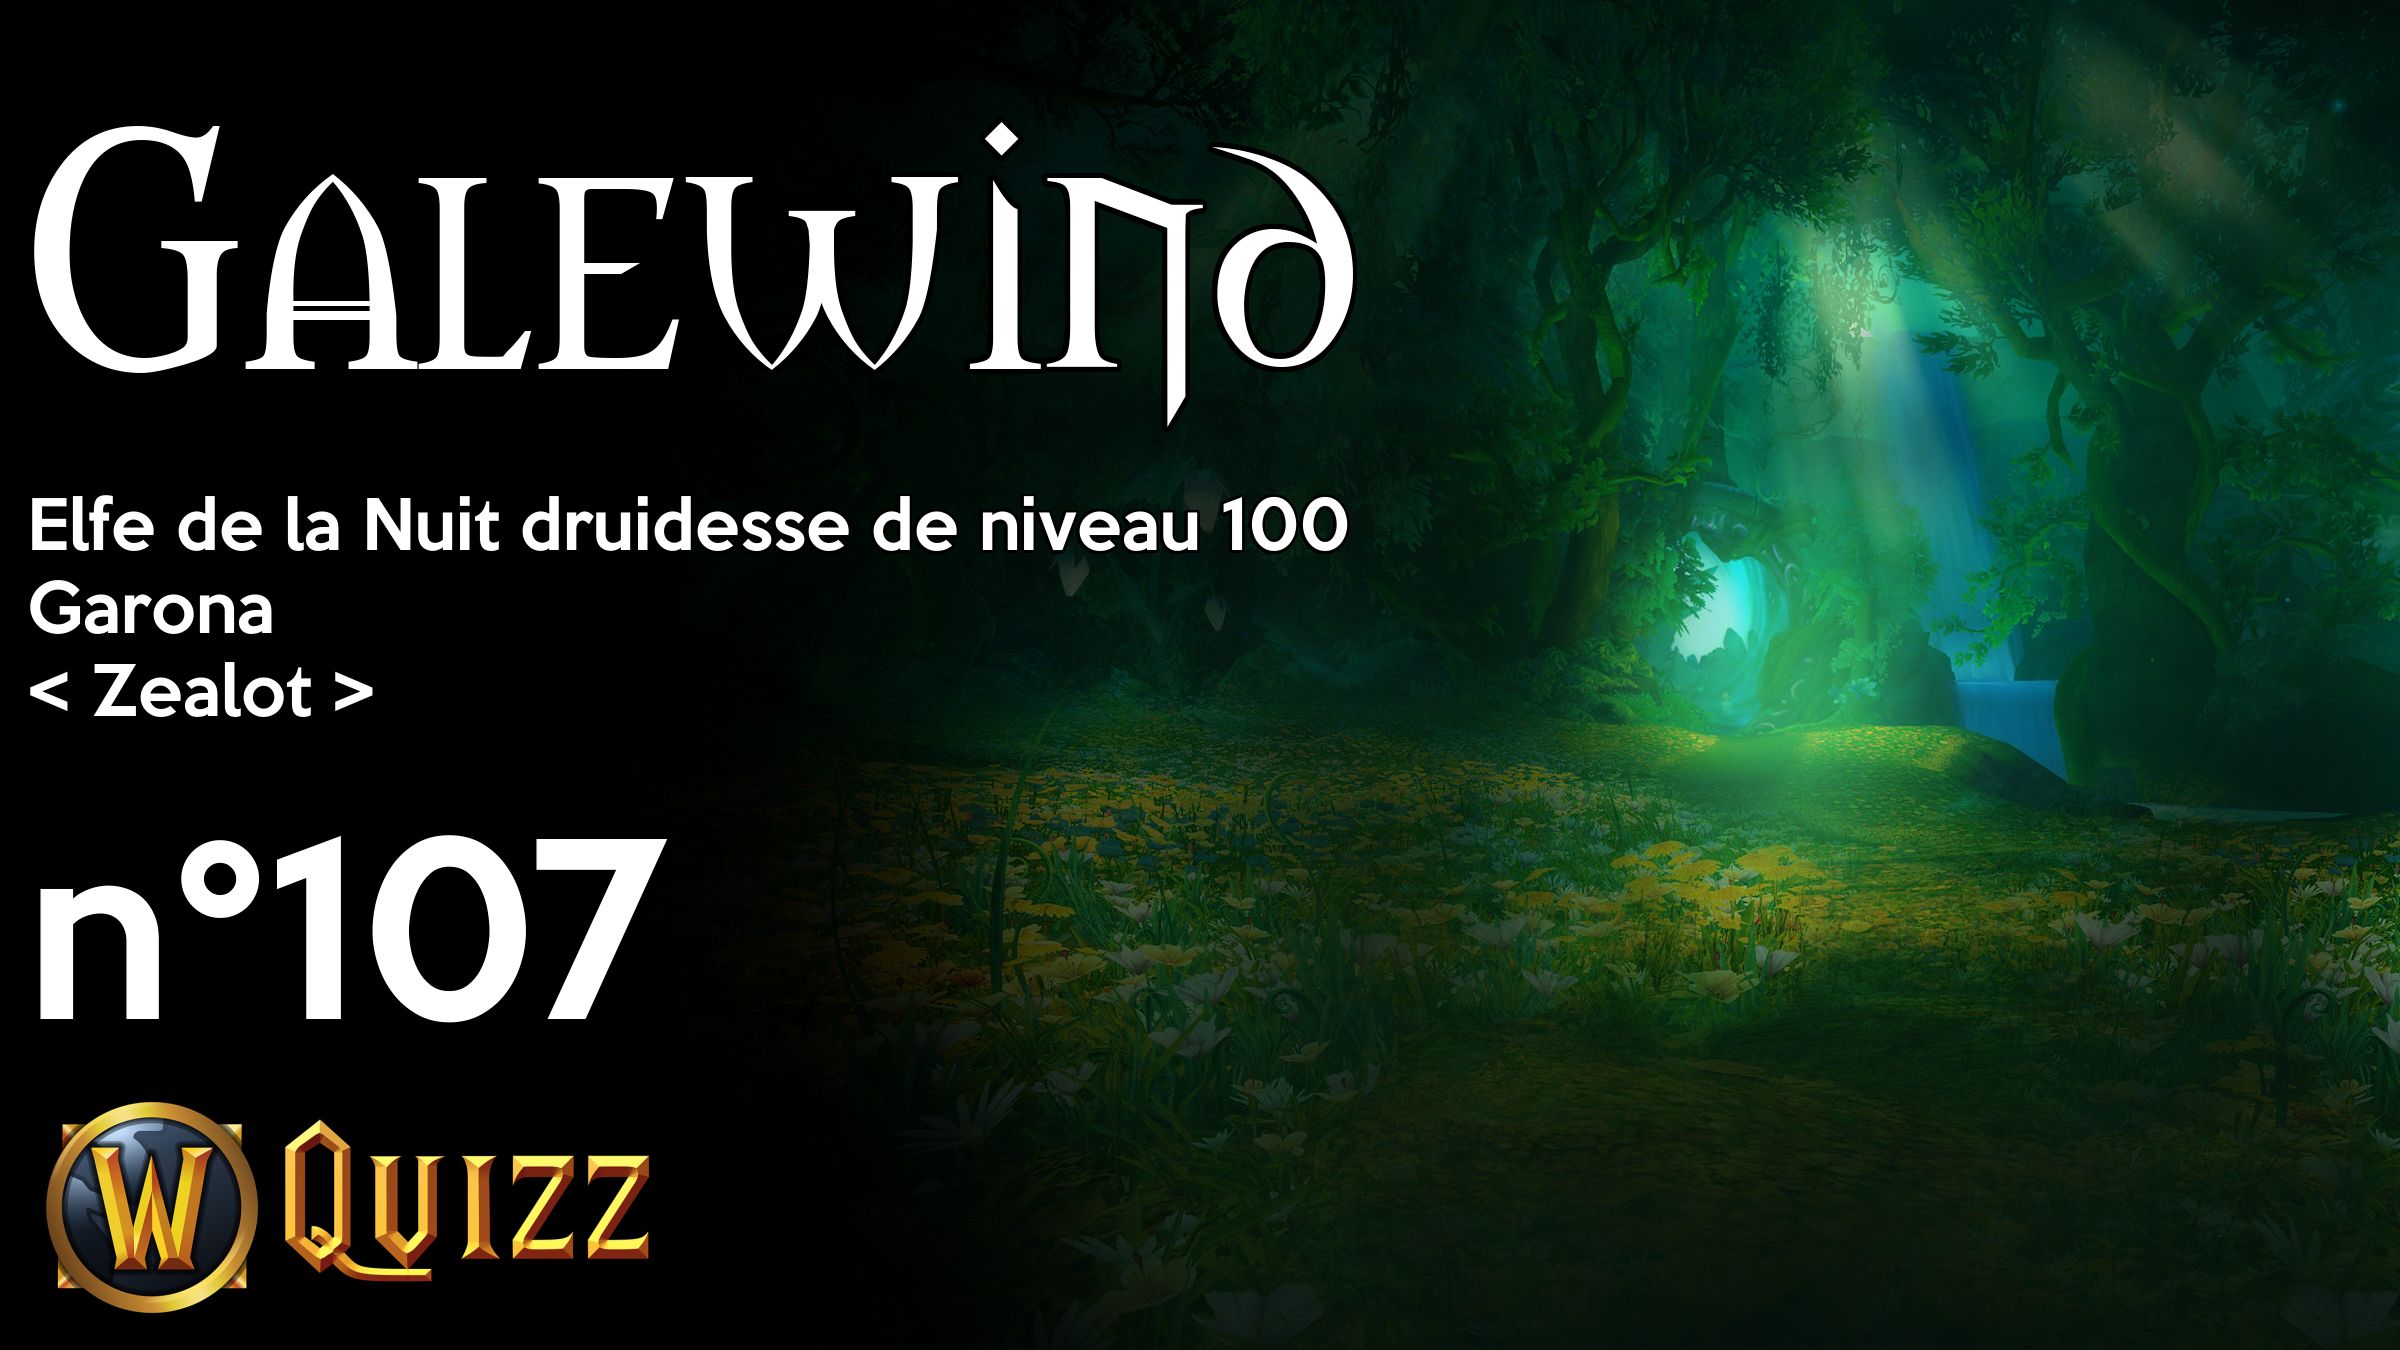 Galewind, Elfe de la Nuit druidesse de niveau 100, Garona